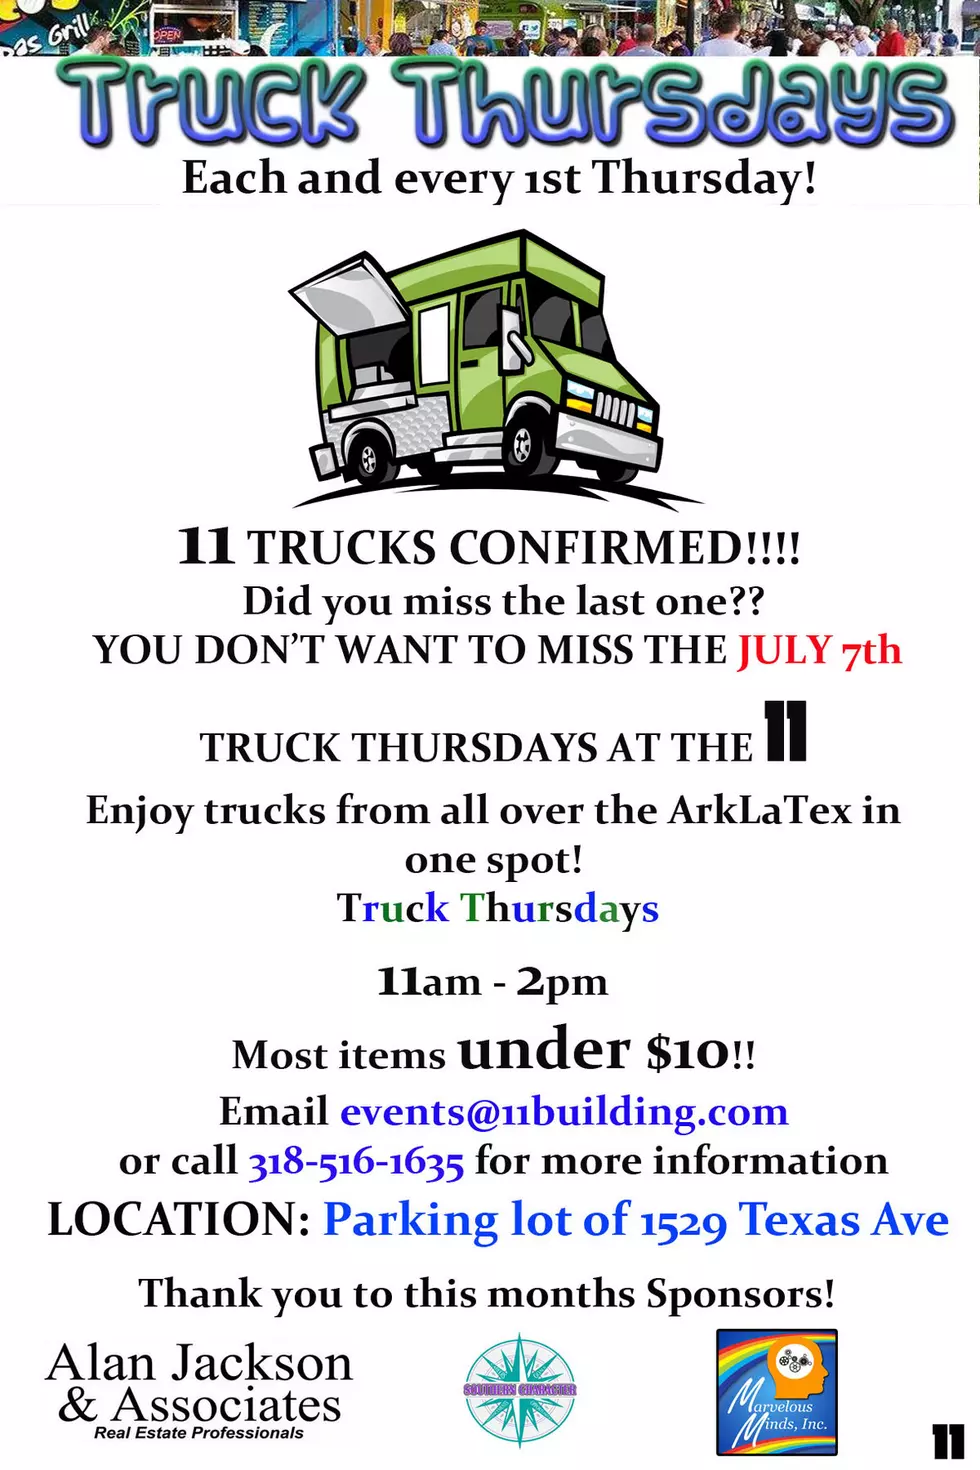 Truck Thursdays Return To The 11